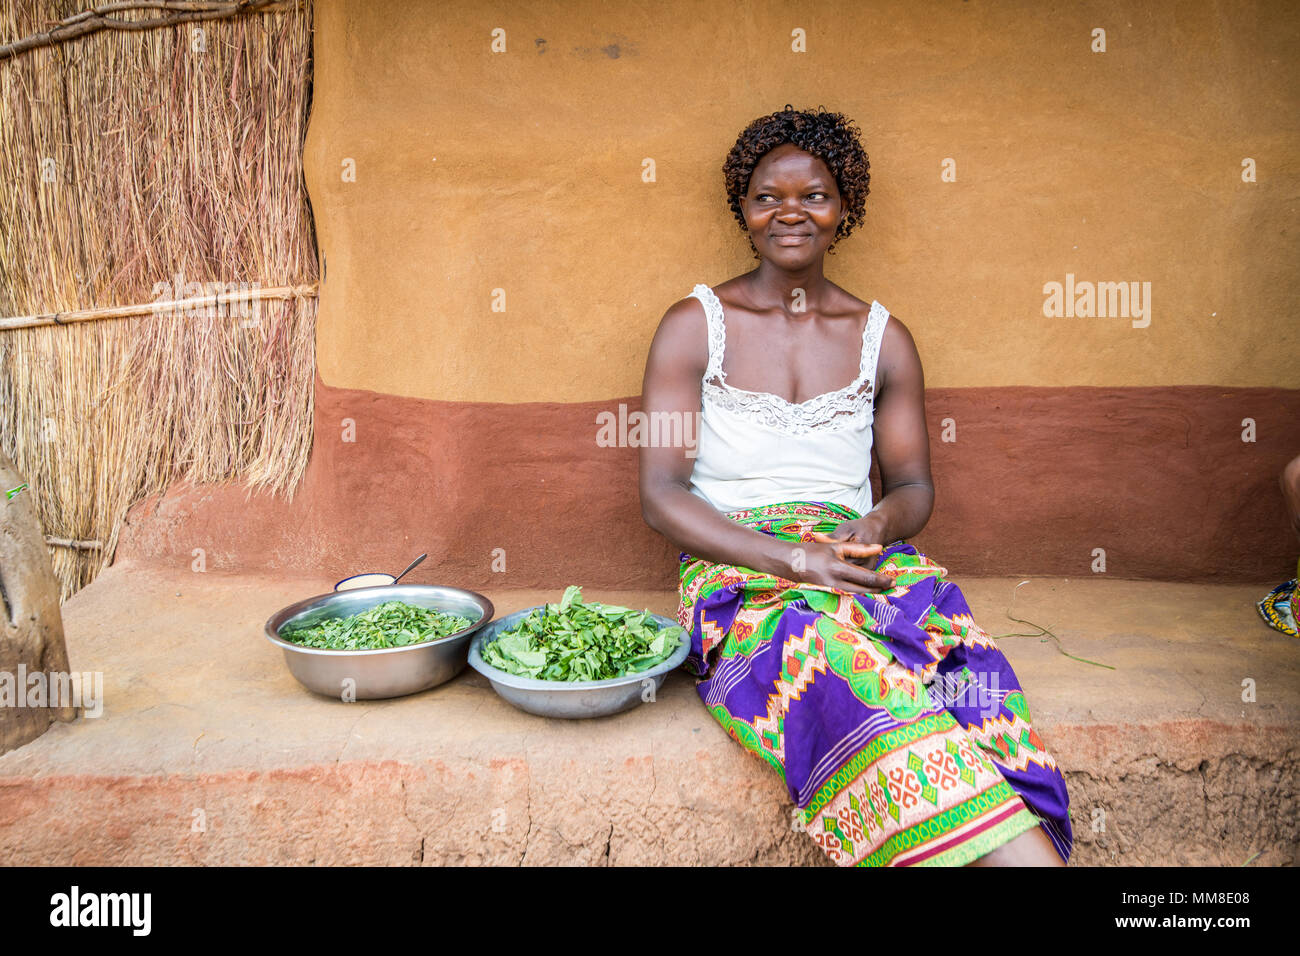 Zambian woman sits next to two bowls of fresh greens that she just prepared, Mukuni Village, Zambia Stock Photo